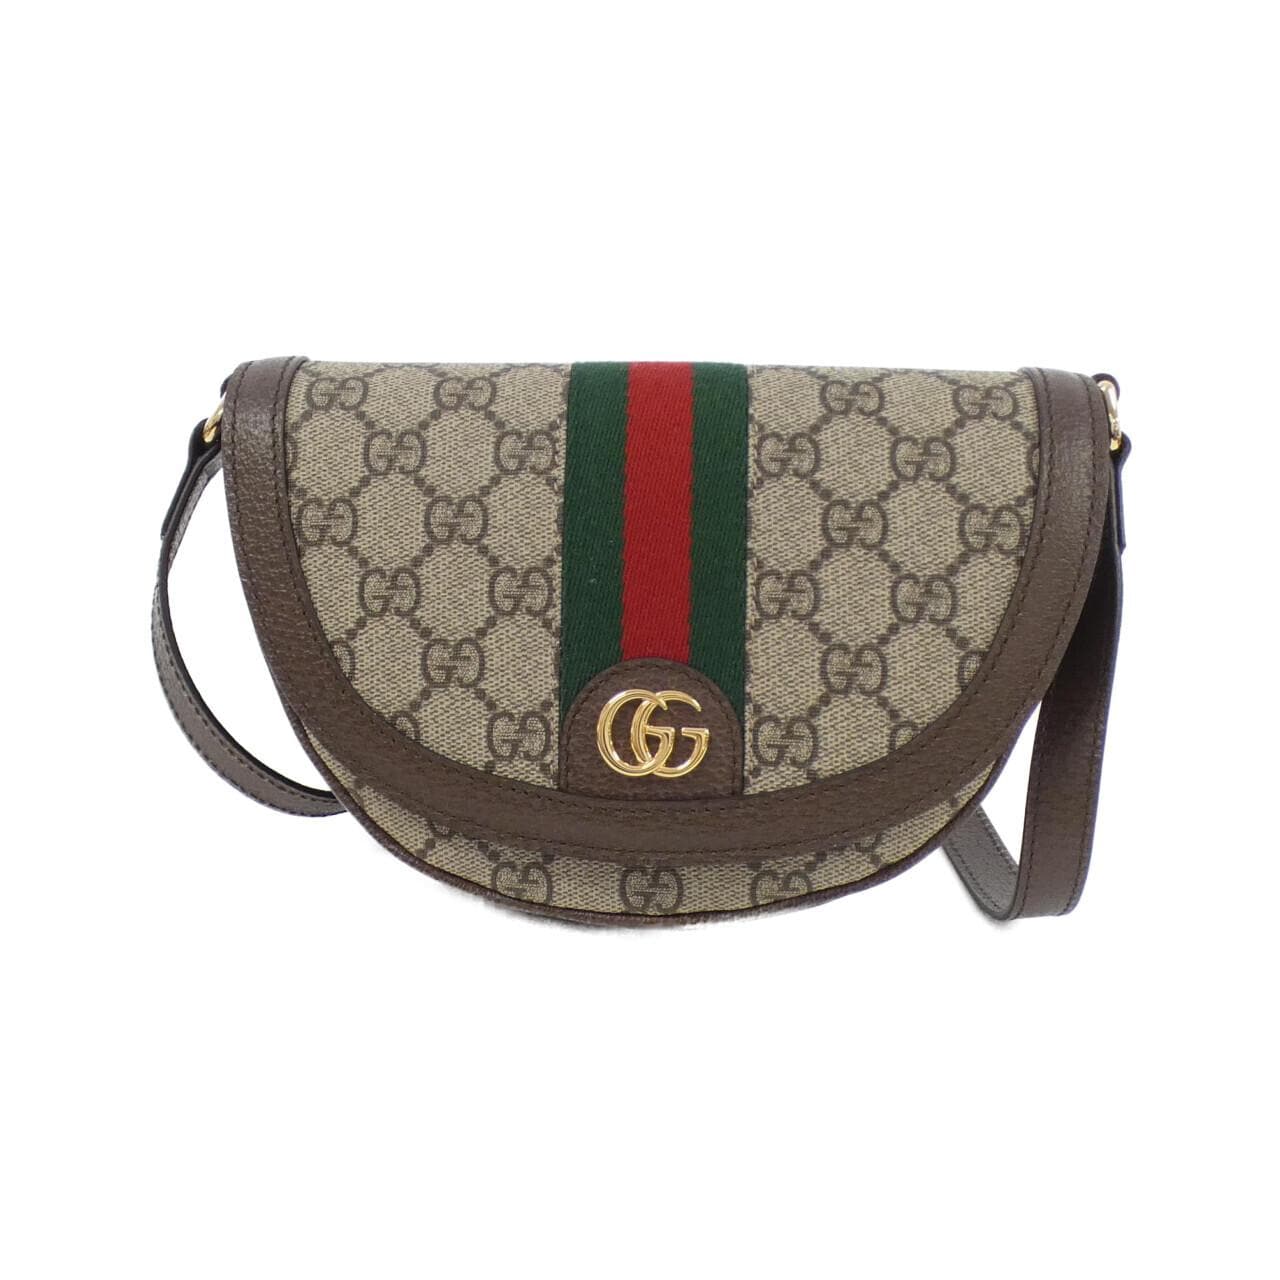 [新品] Gucci OPHIDIA 757309 96IWG 单肩包